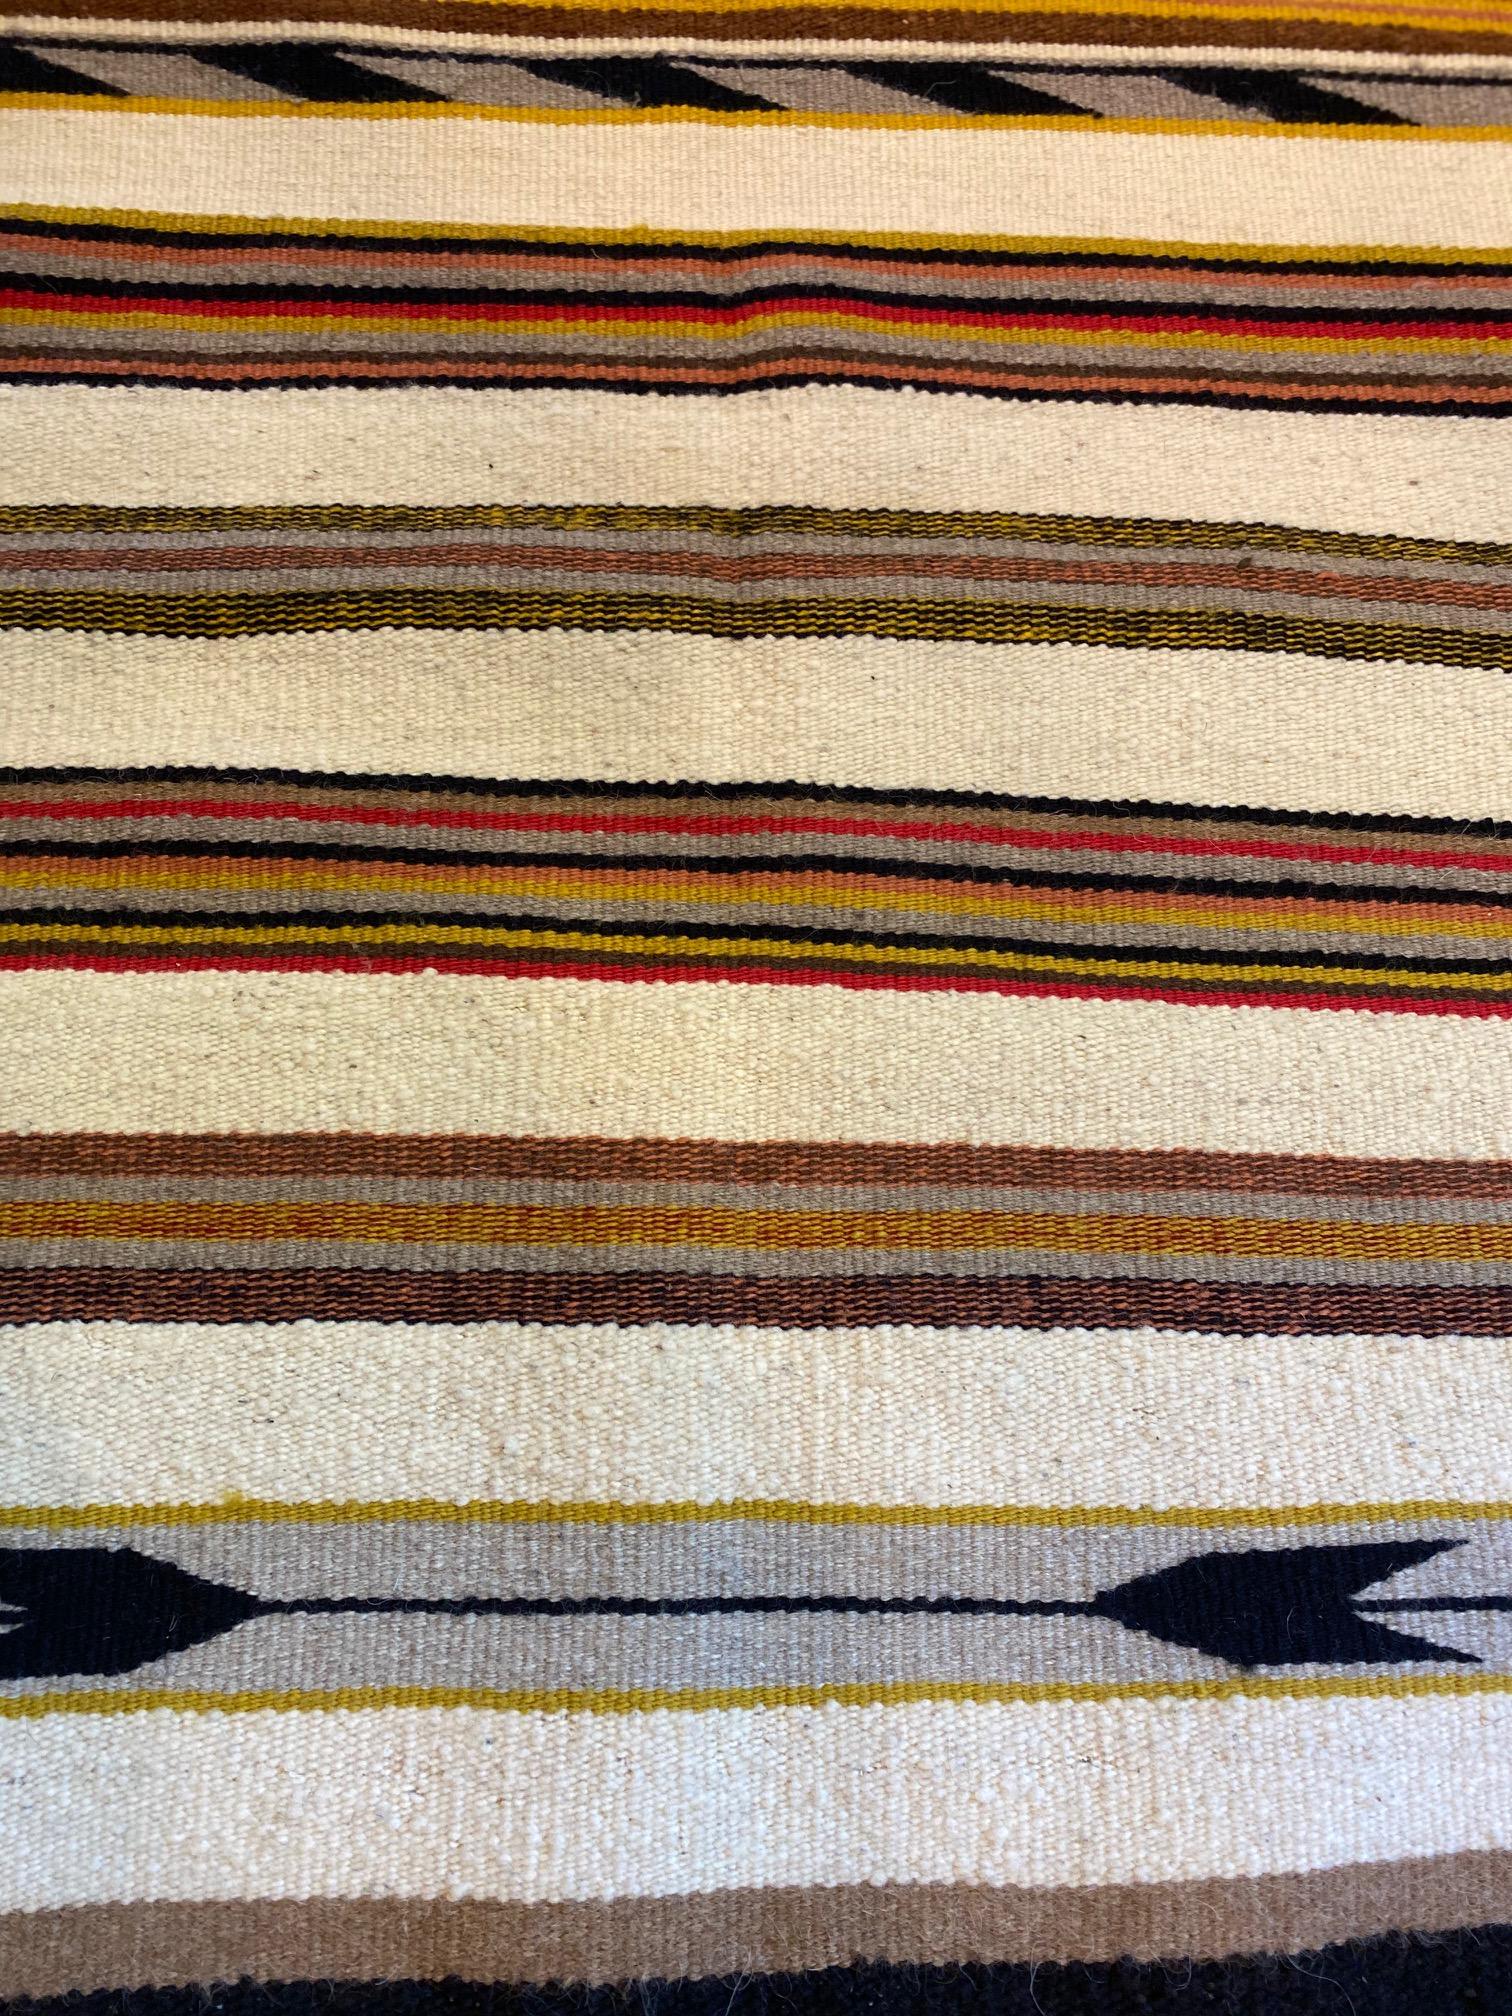 Hand-Woven Navajo Rug, circa 1920s